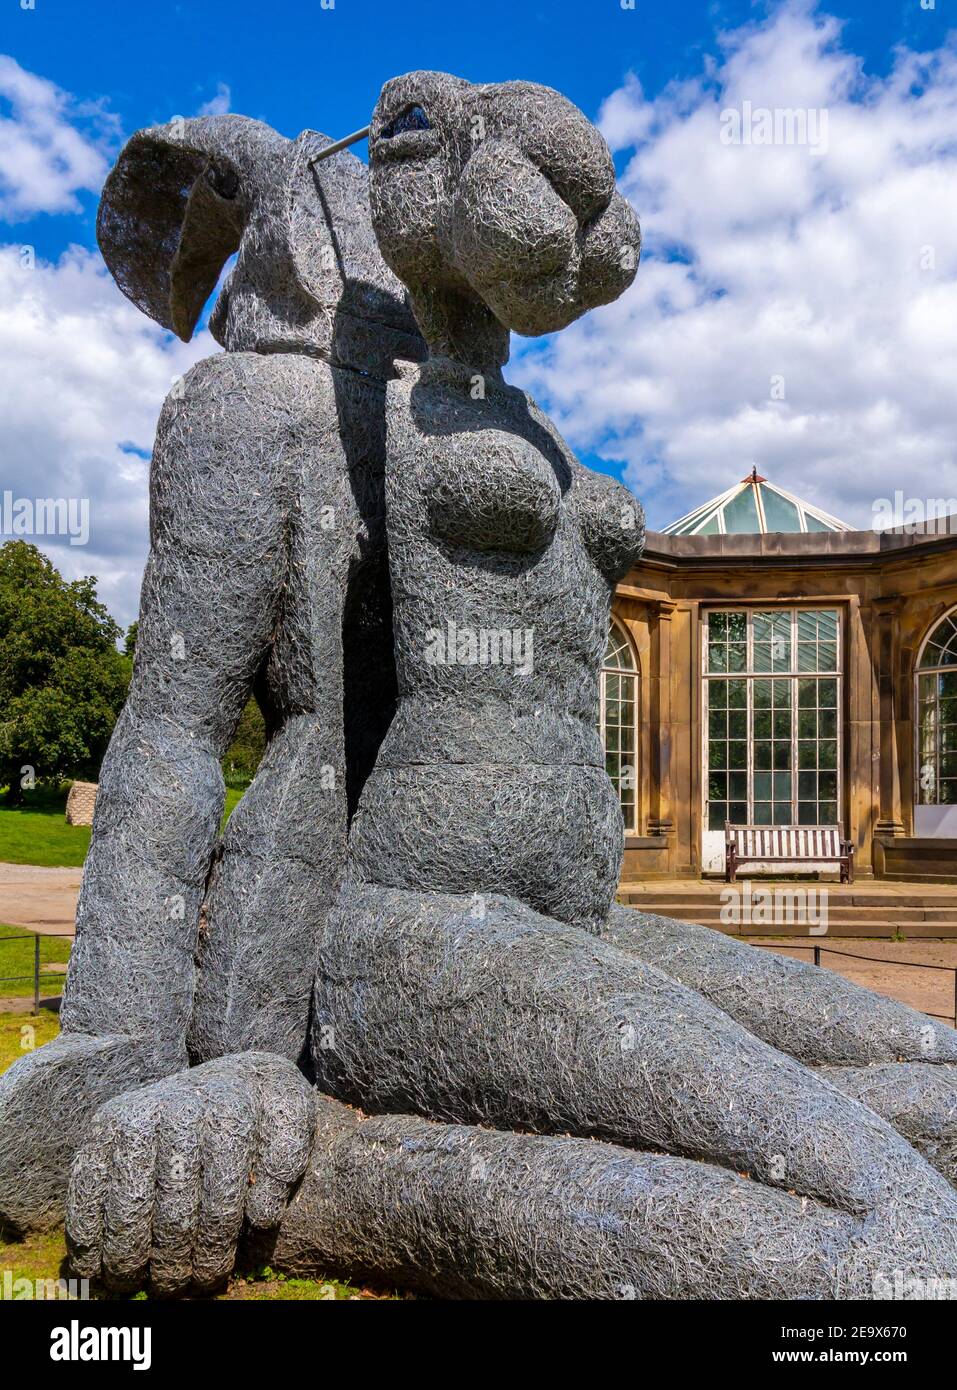 Seduto da Sophie Ryder 2007 una monumentale scultura in filo galvanizzato Di una lepre in mostra allo Yorkshire Sculpture Park Wakefield Yorkshire Inghilterra Foto Stock